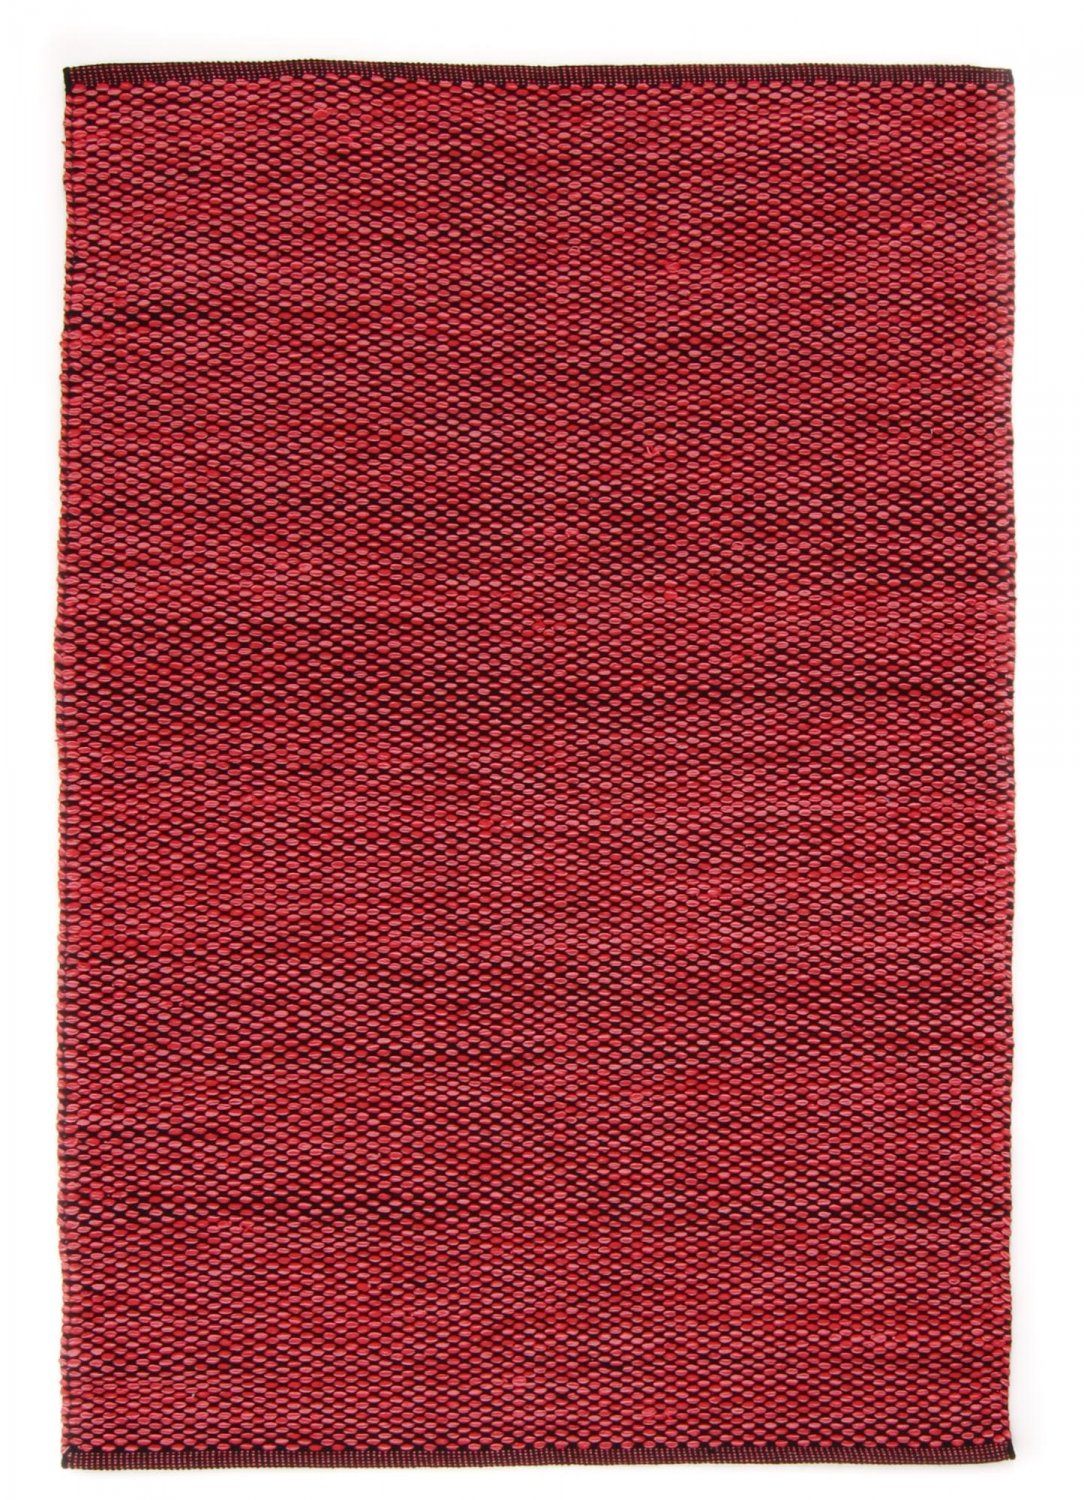 Kludetæppe - Tuva (rød)